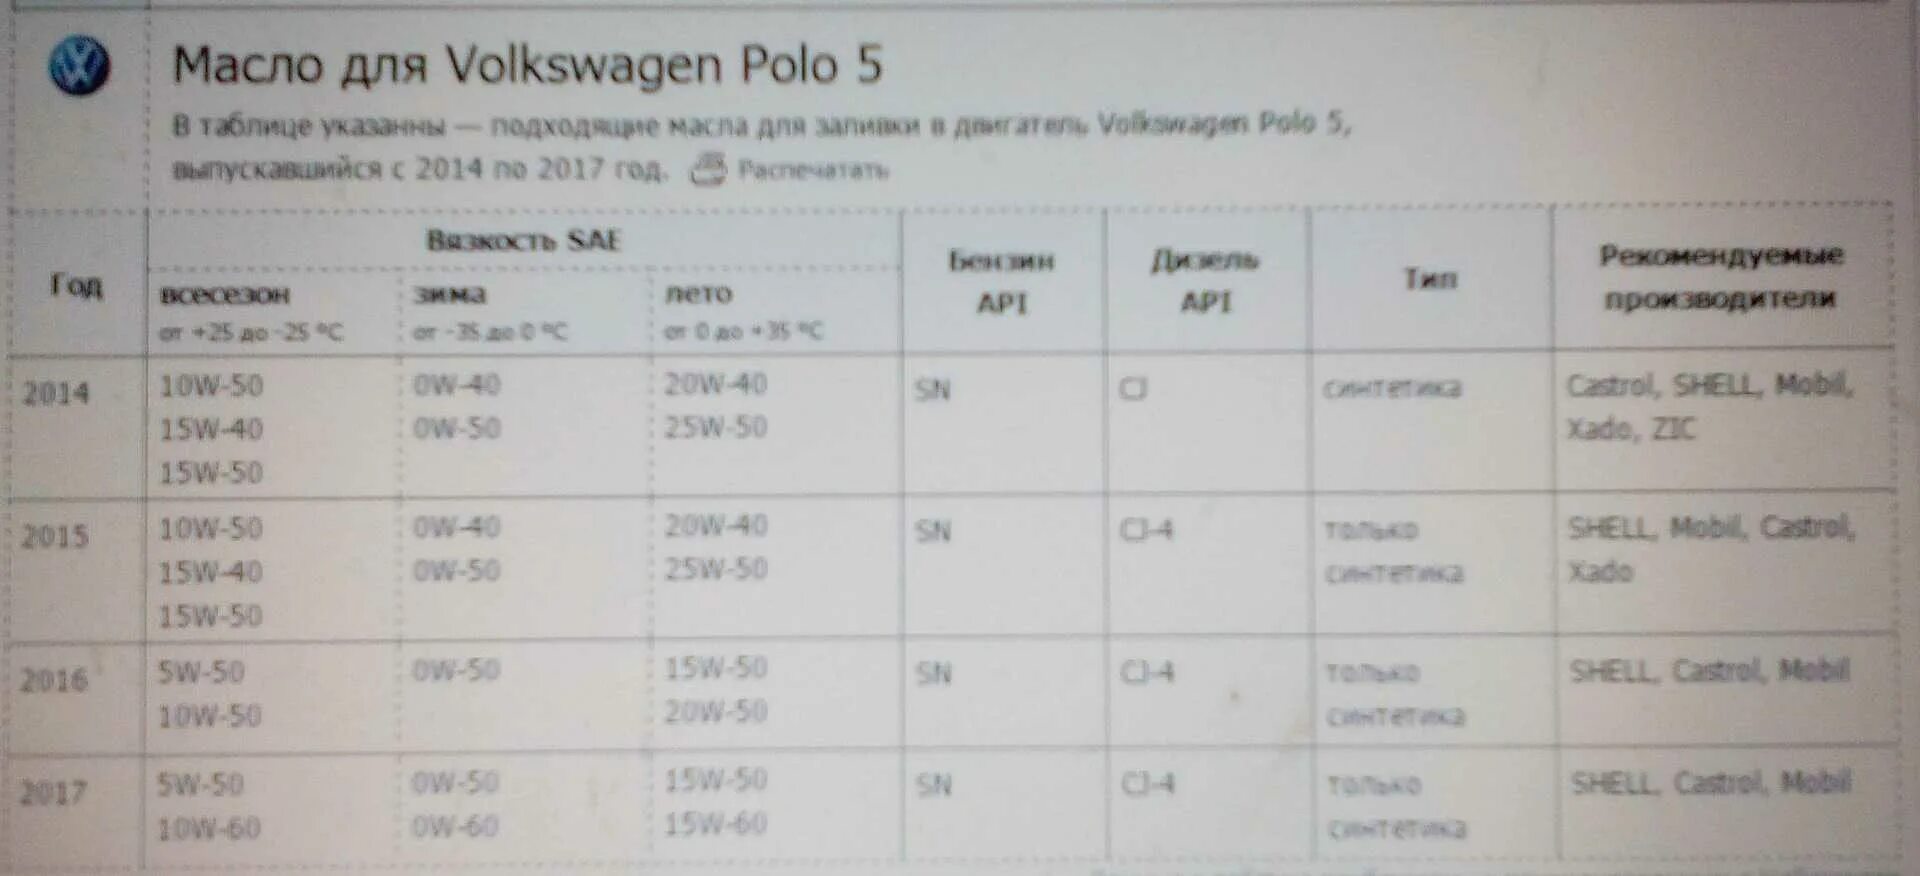 Объем масла Фольксваген поло 1.6. Polo sedan 1.6 допуск к маслу. Объем масла в двигателе Фольксваген поло 1.6 110. Масло VW Polo sedan 1.6 110.